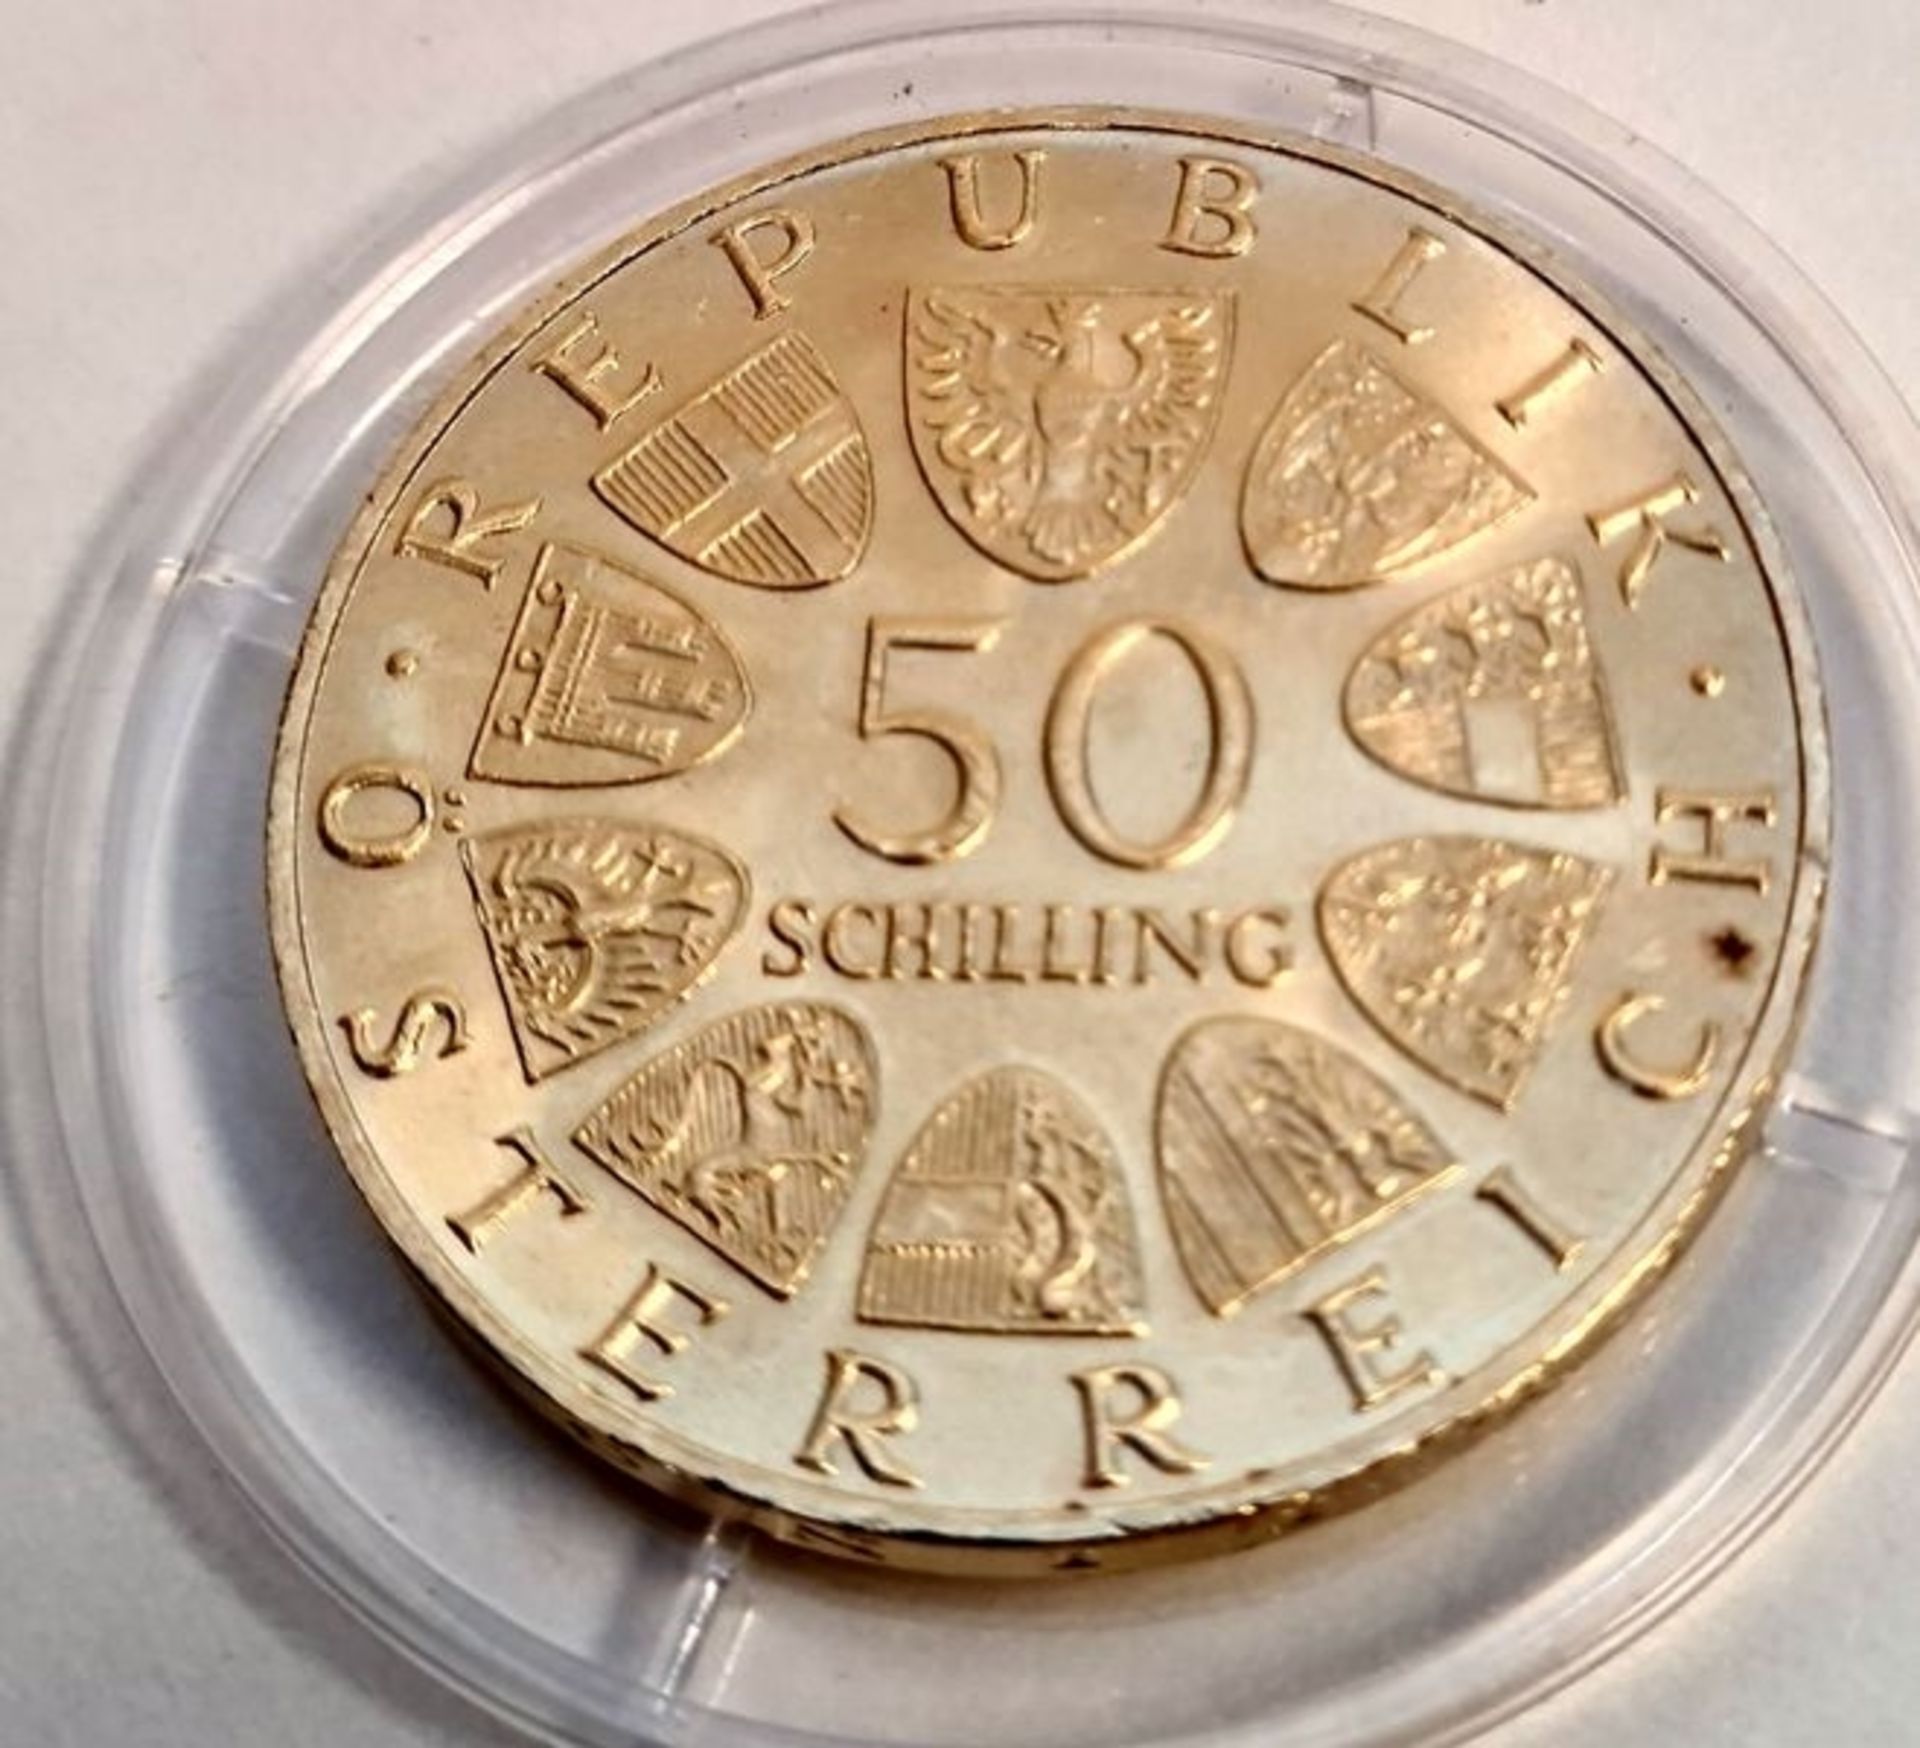 50 Schilling 1967 , 100 Jahre Donauwalzer , Silber 900 - vergoldet, Gewicht: 20 Gramm, Durchmes - Image 2 of 2